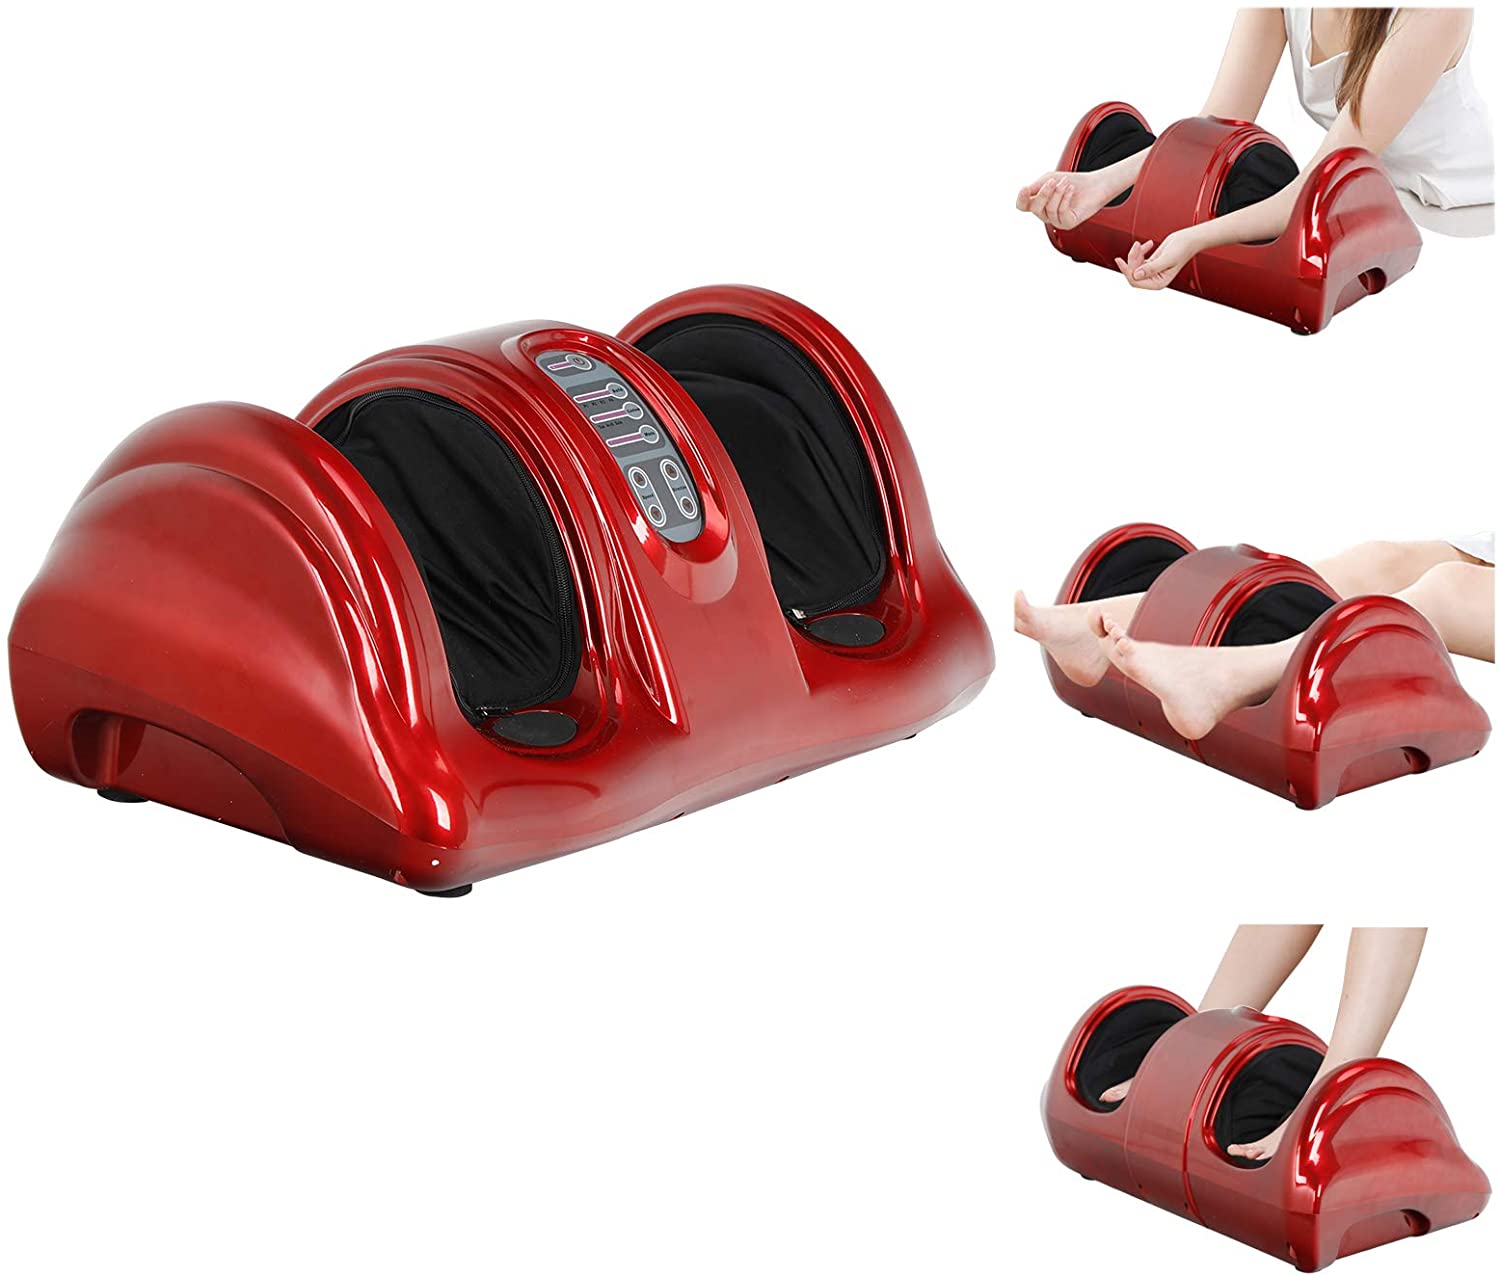 ZENY Foot Leg Calf Shiatsu Massager Massage Machine